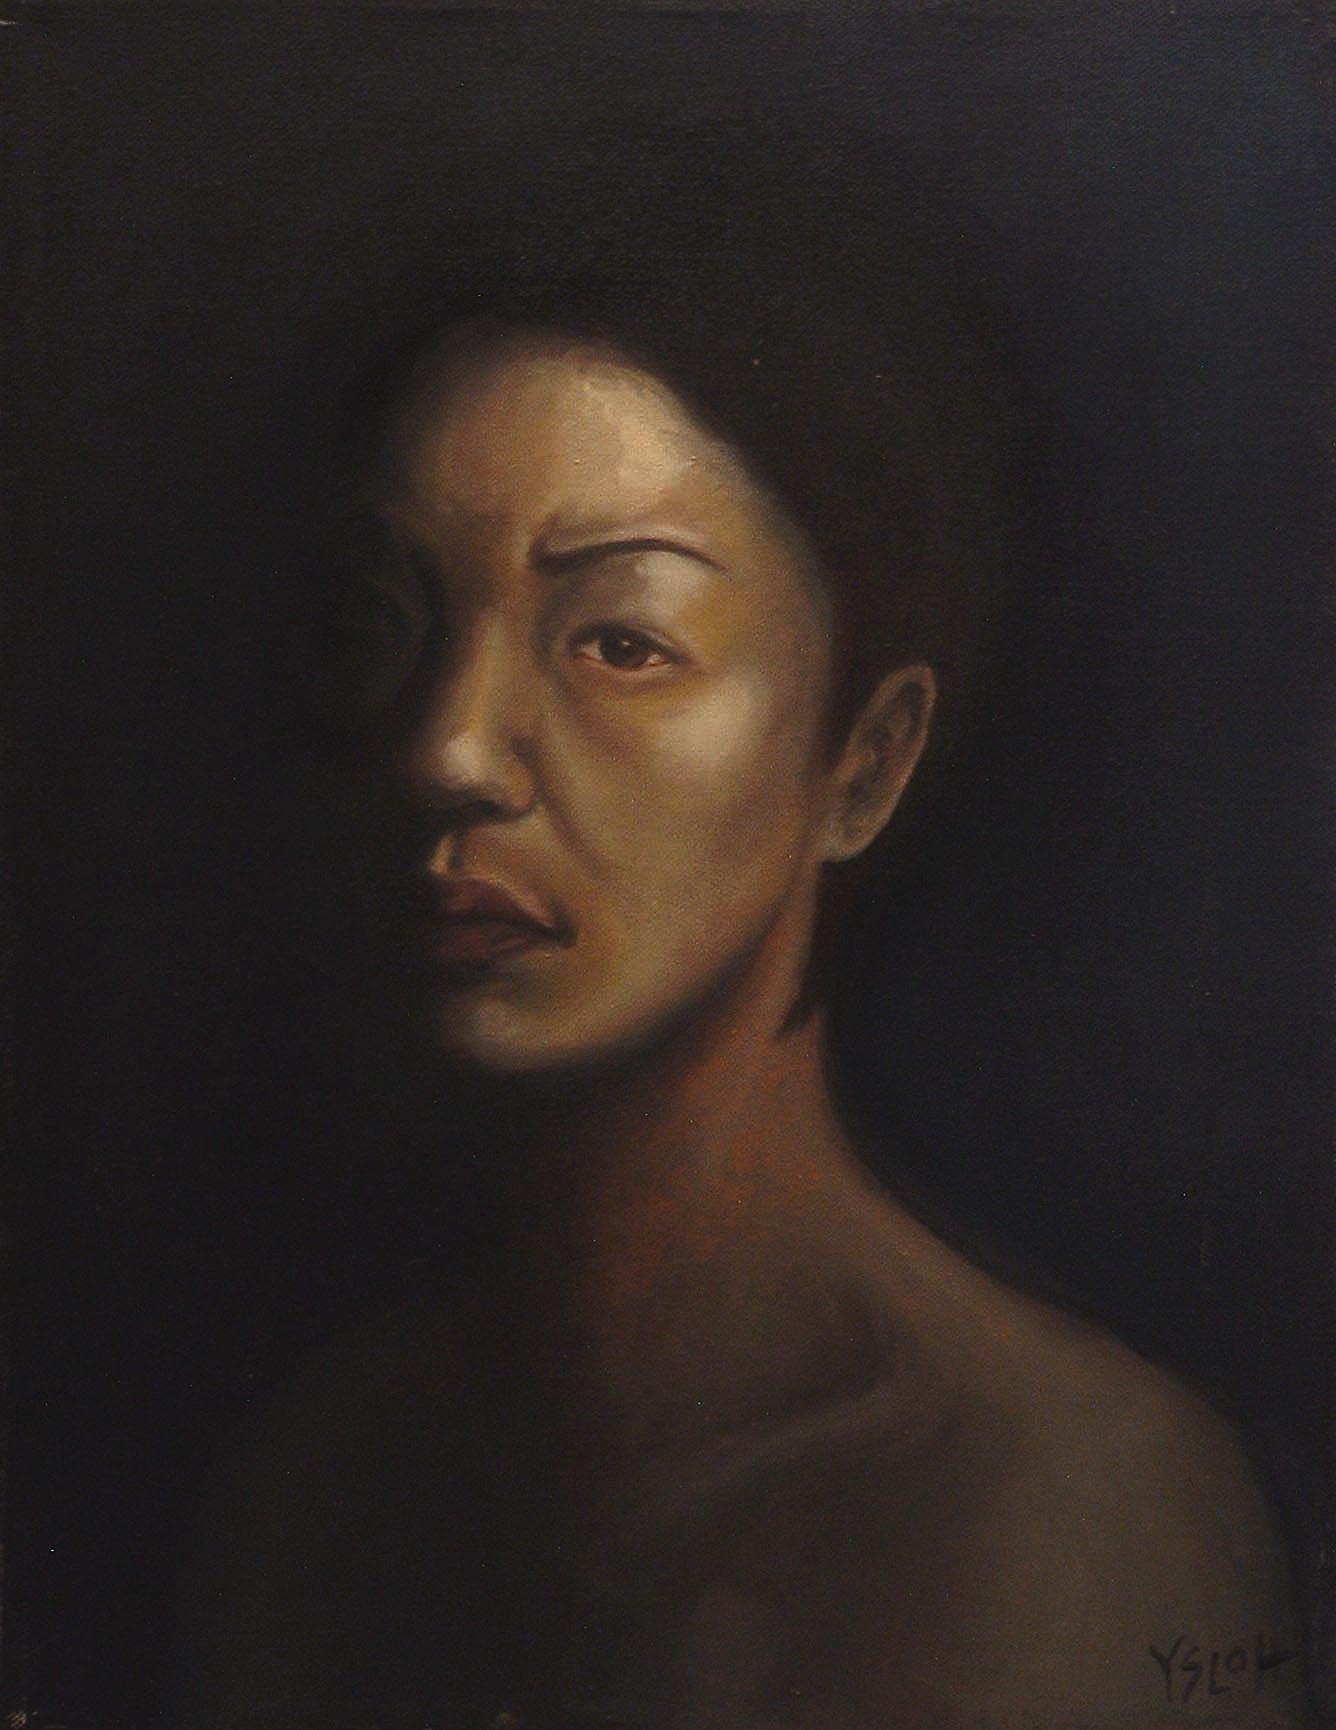   Self-Portrait   oil on canvas, 18 x 14 &nbsp; &nbsp; &nbsp; &nbsp; &nbsp; 